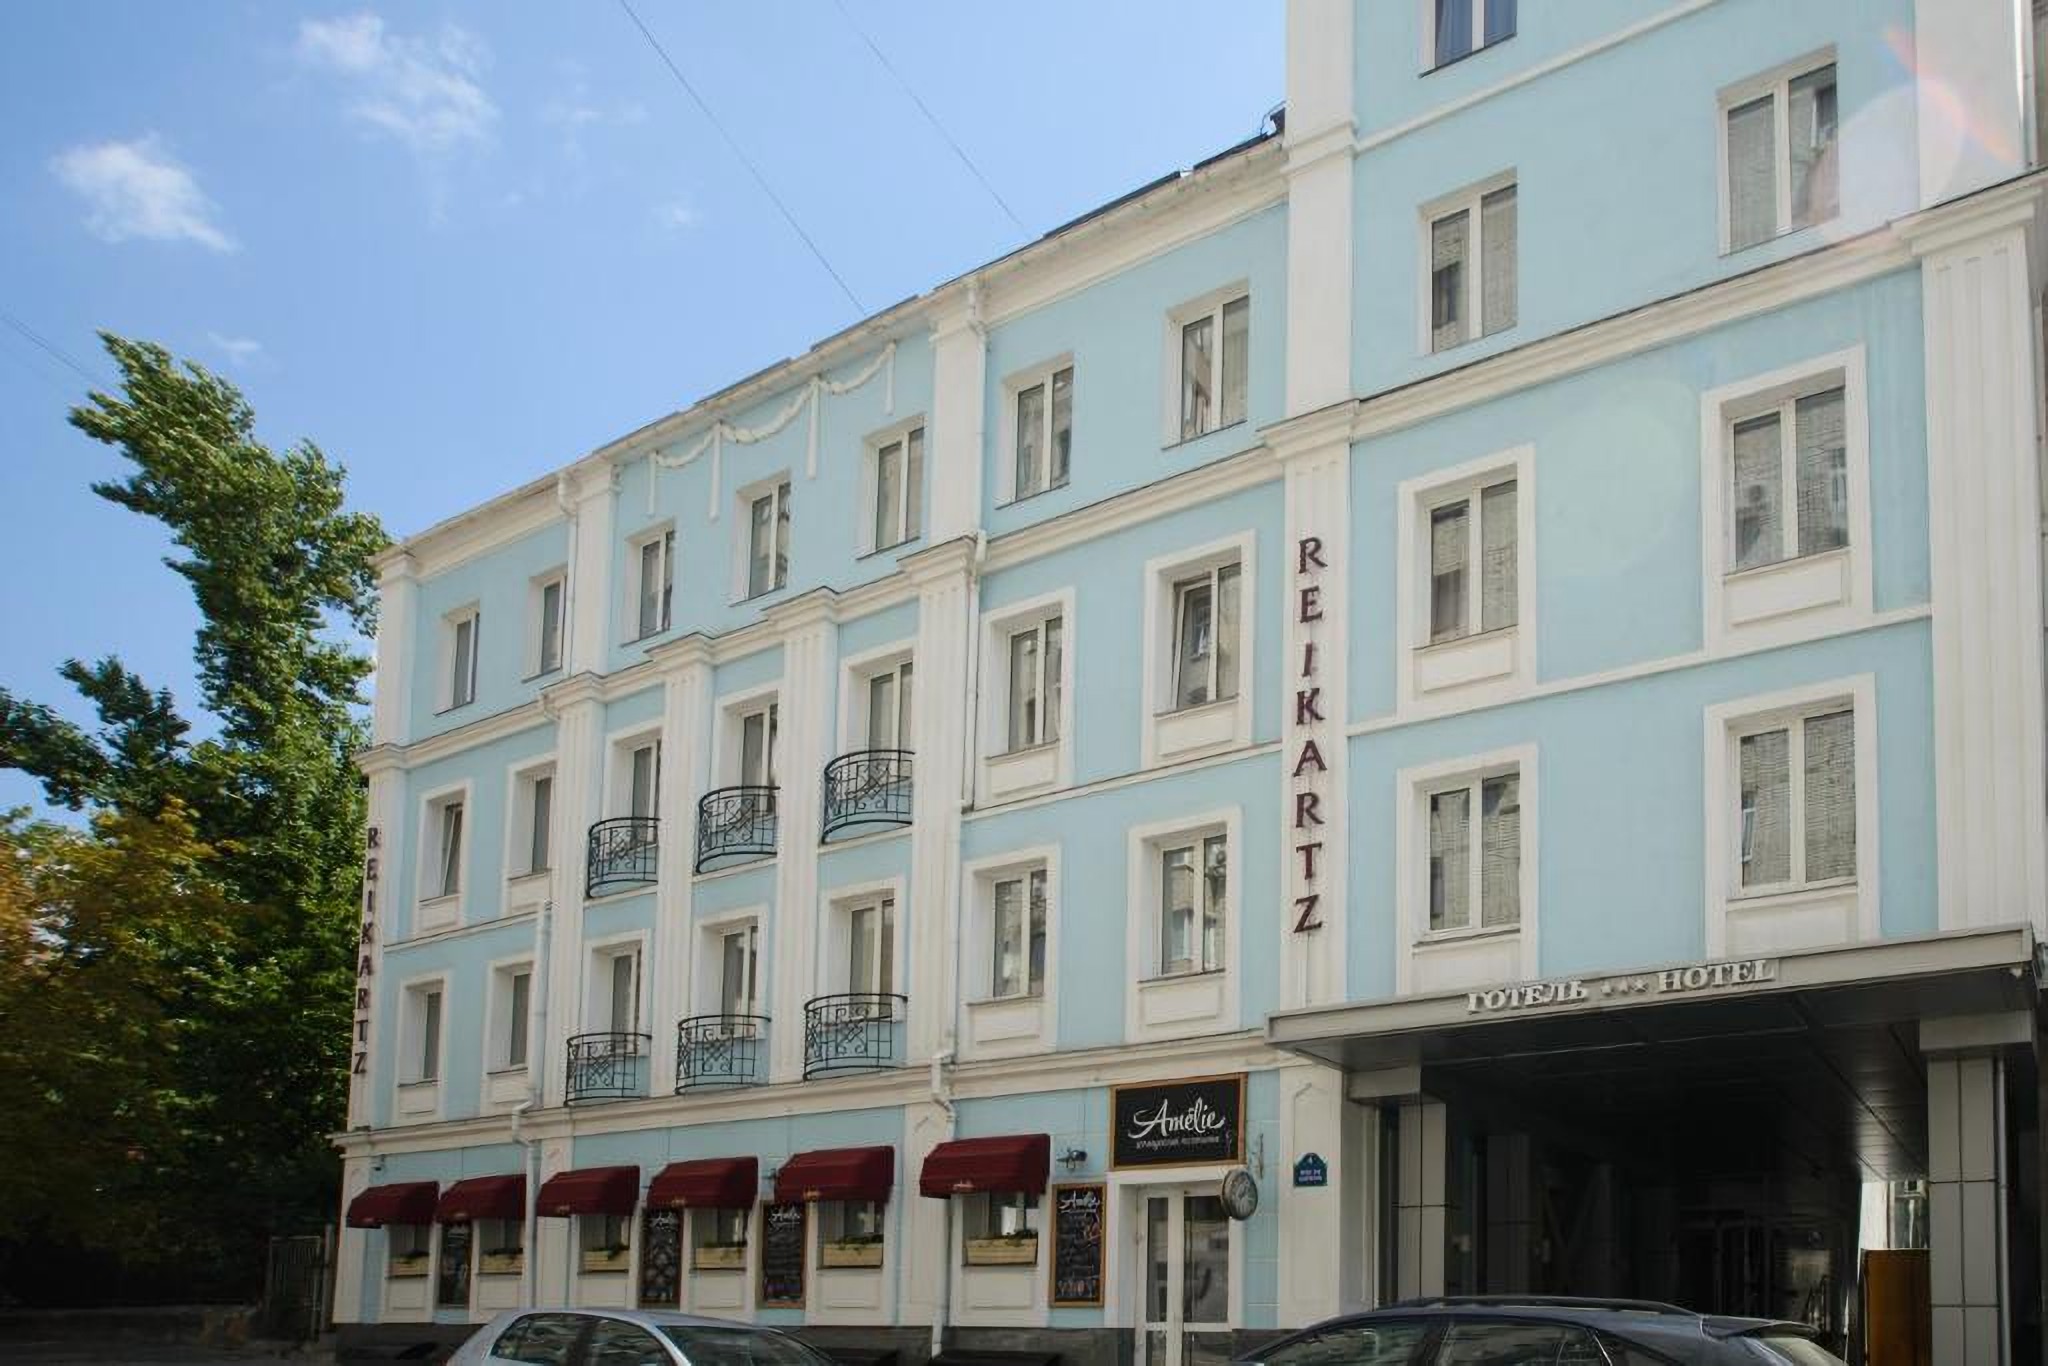 The Reikartz Hotel Kharkiv